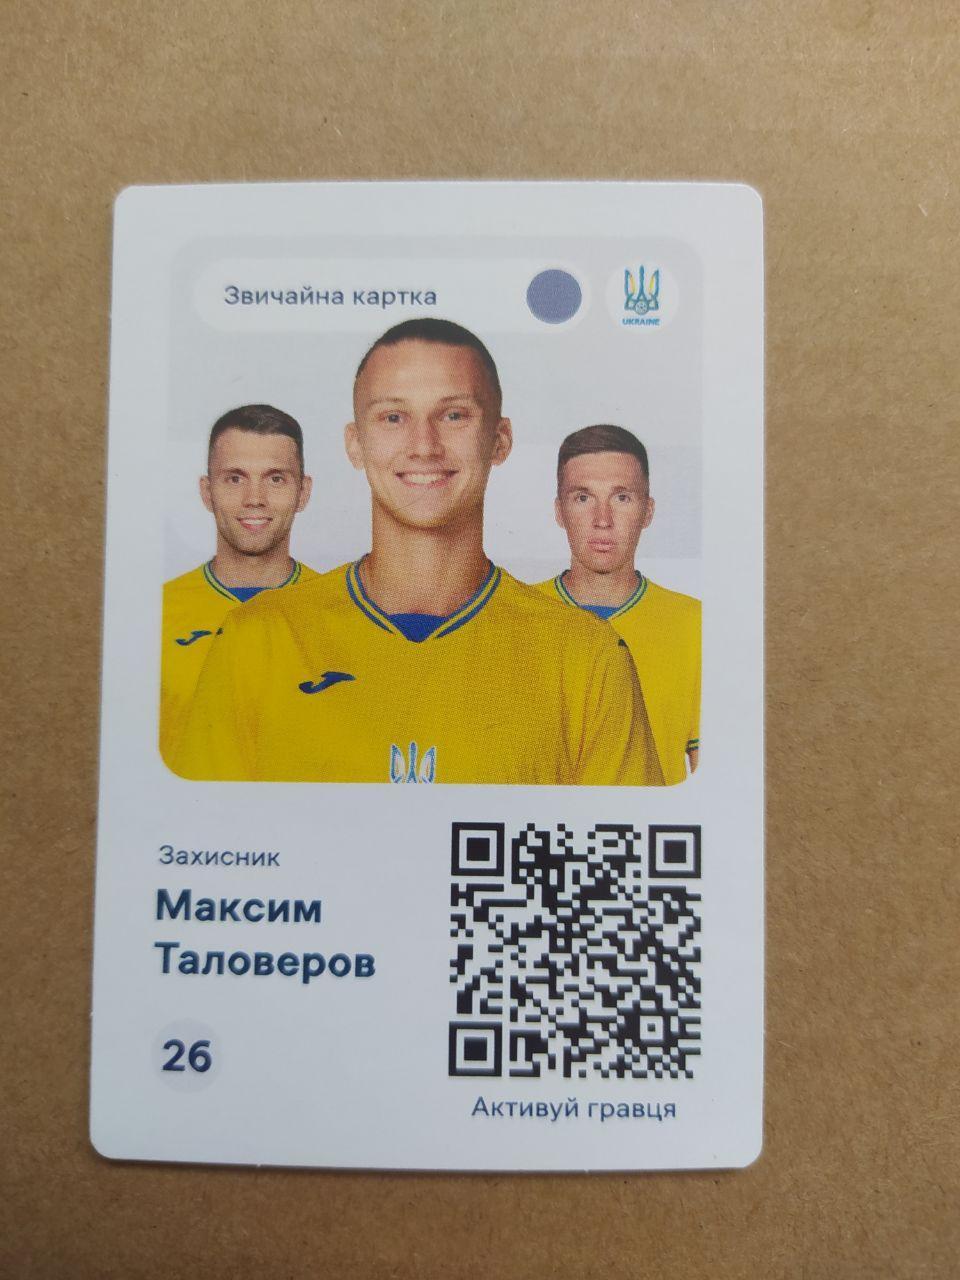 Чемпіонат по футболу ЕВРО-2024 захисник Максим Таловеров Україна № 26